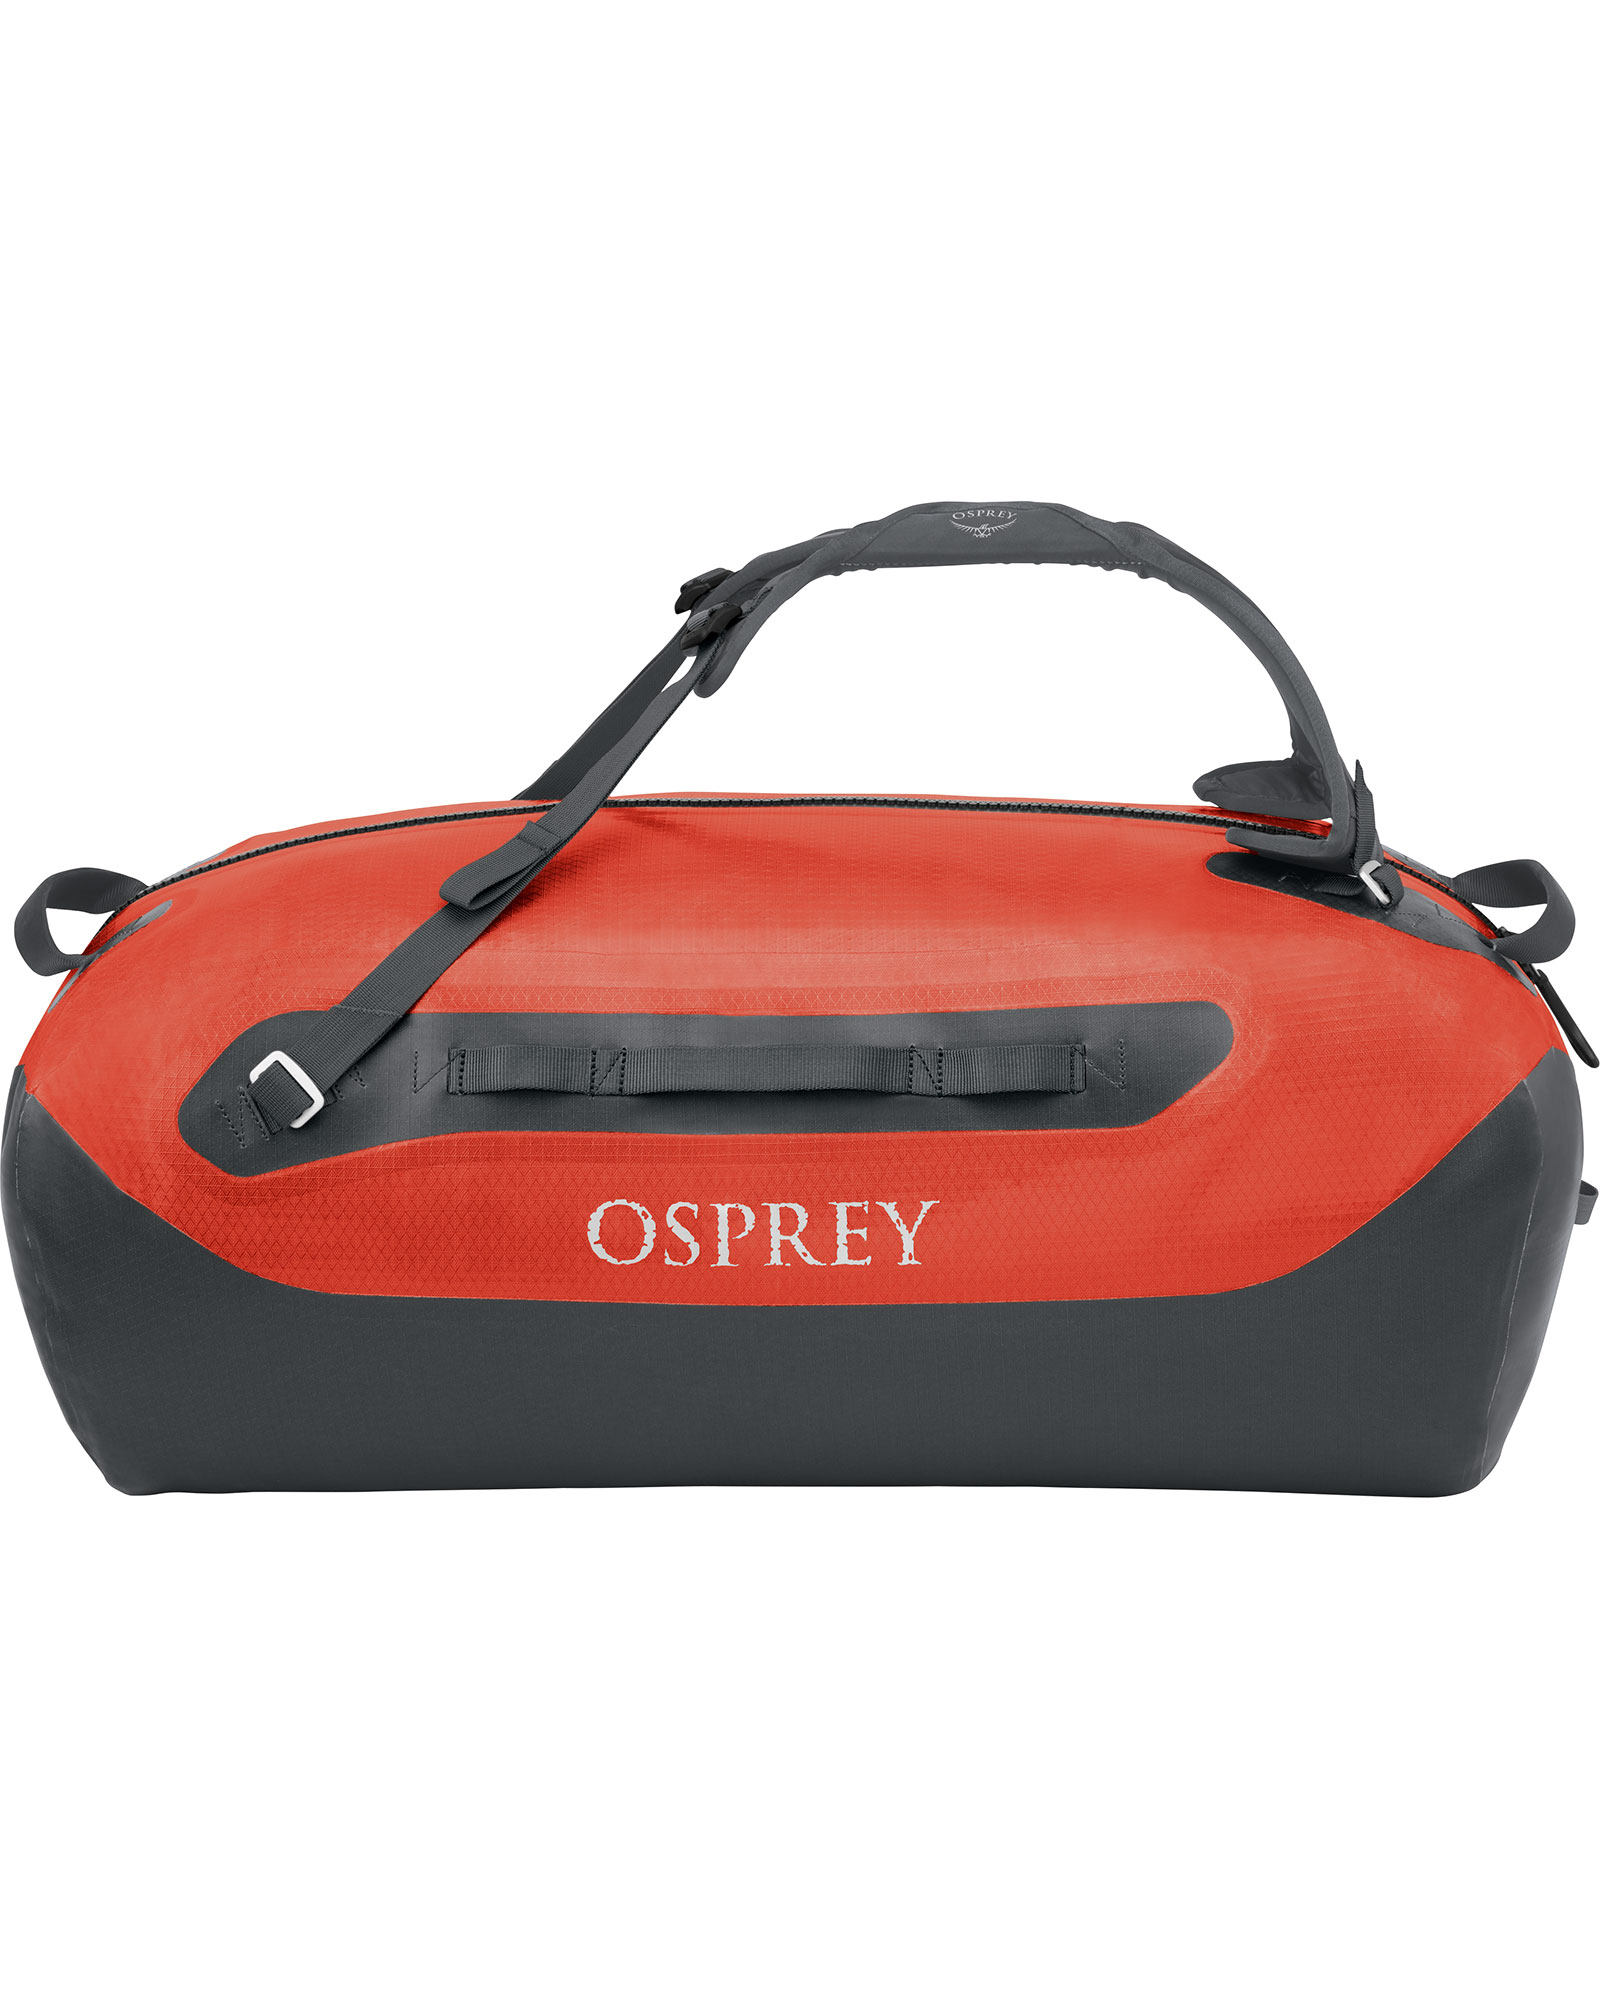 Osprey Transporter 70 Waterproof Duffel